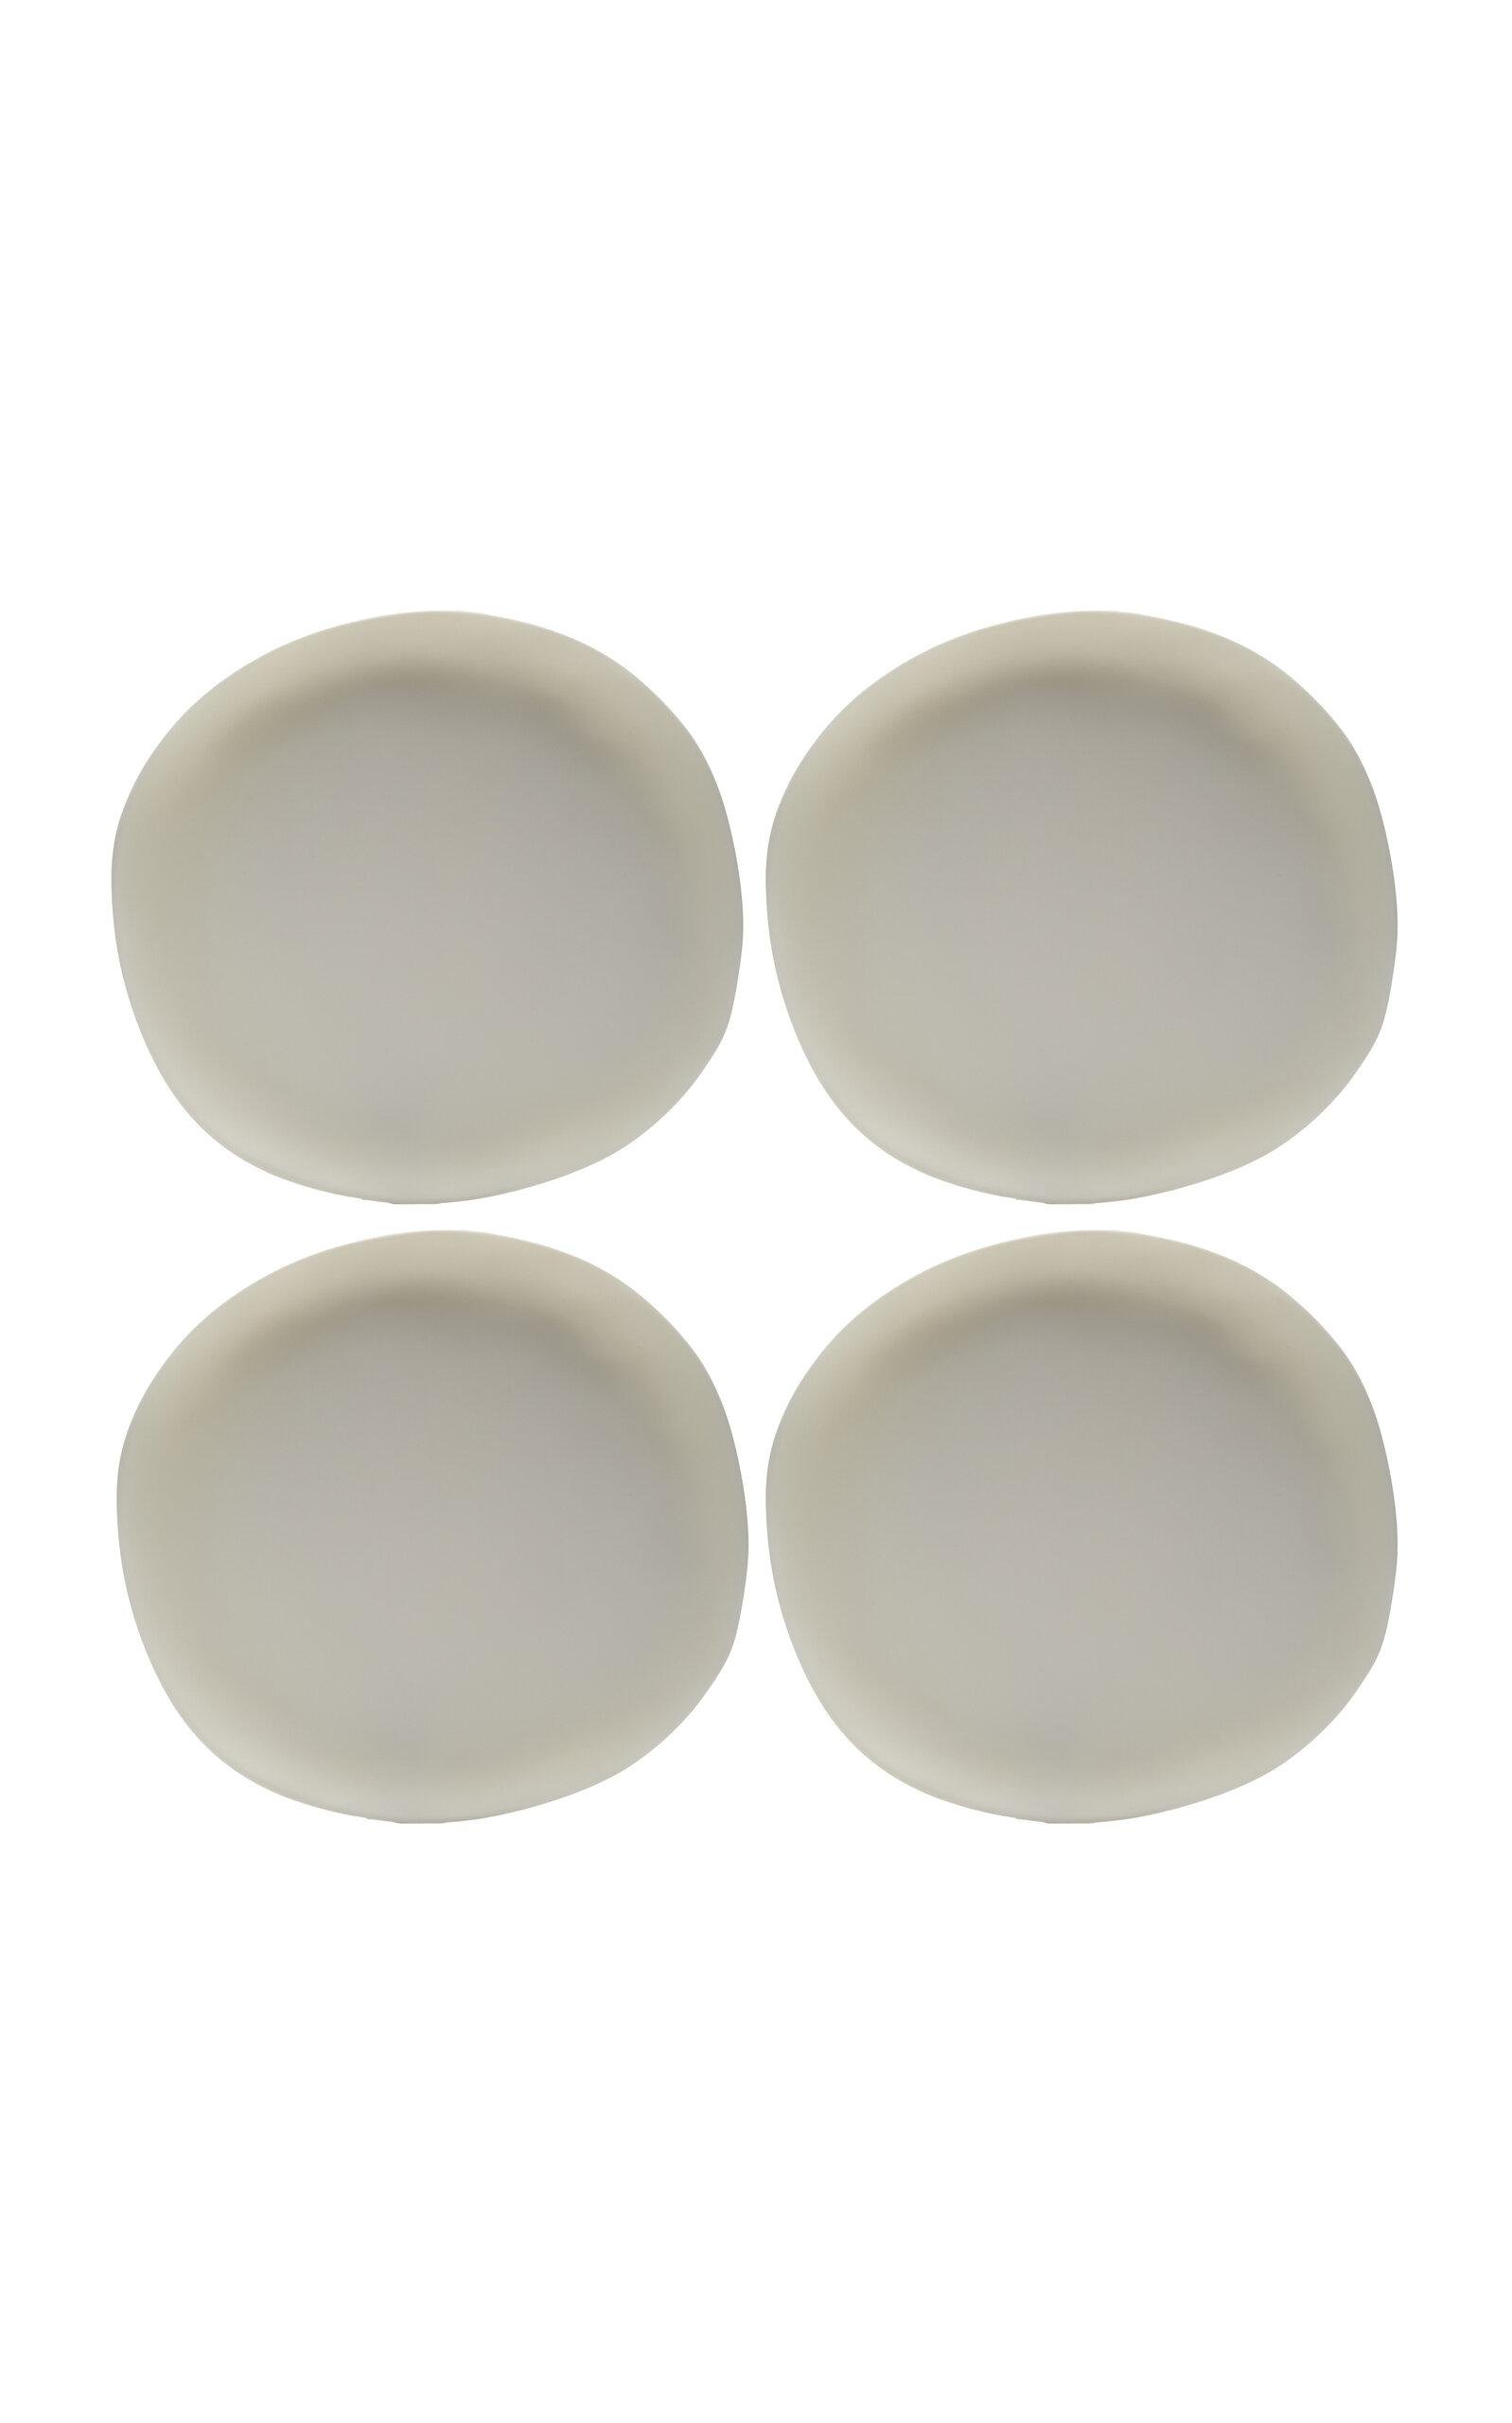 Tina Frey Designs - Sculpt Set-of-Four Large Resin Plates - White - Moda Operandi by TINA FREY DESIGNS